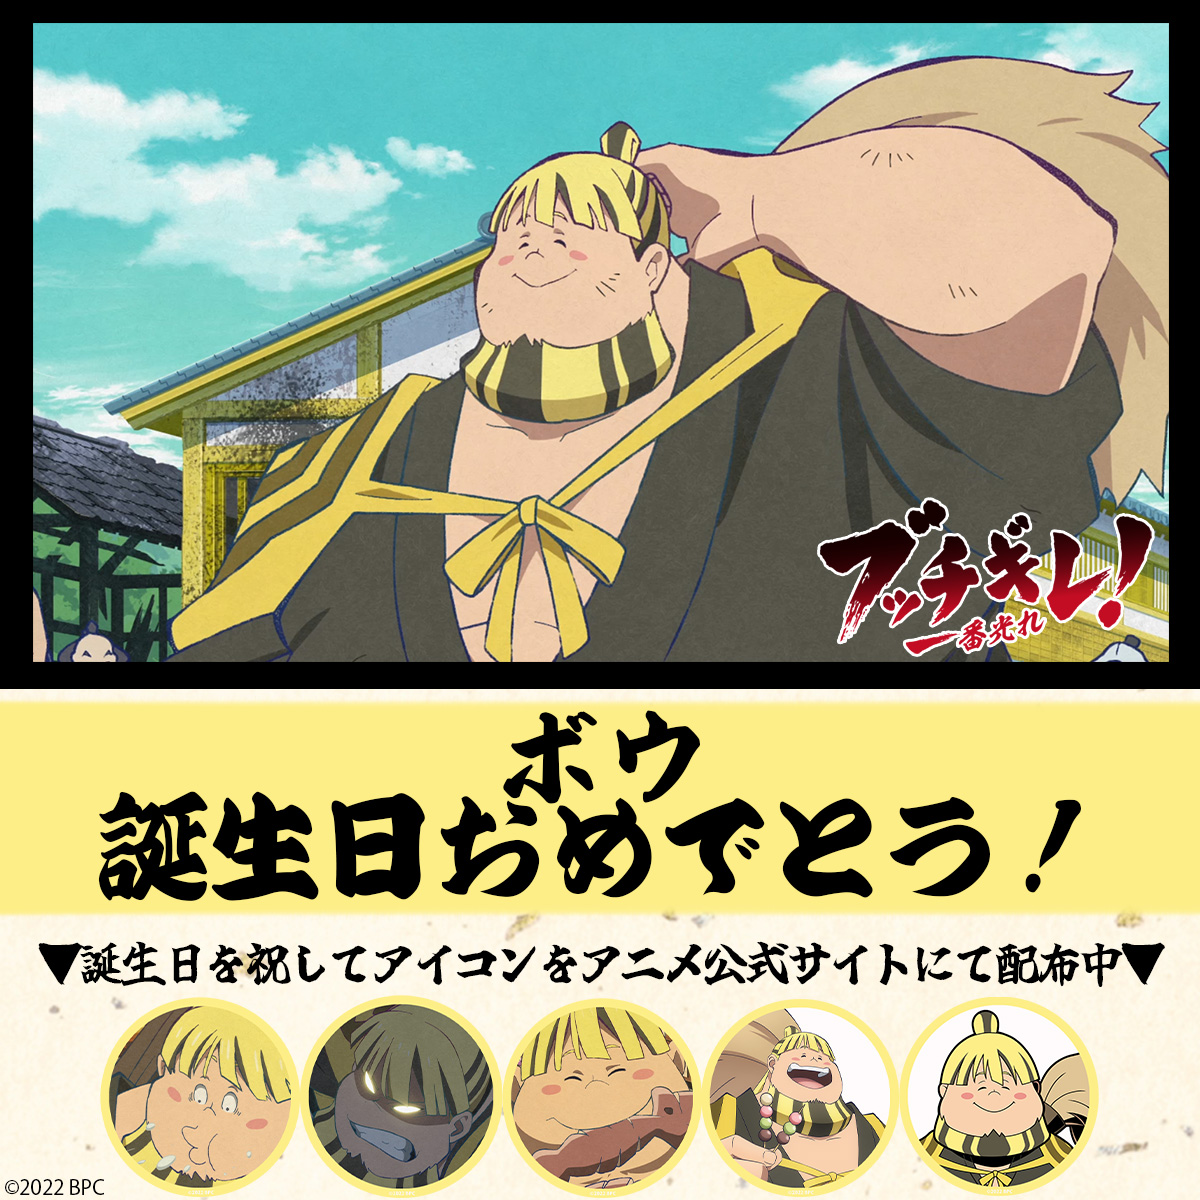 Poster - Bucchigire! (Shine On! Bakumatsu Bad Boys!) / Toudou Heisuke ( Bucchigire!) (オリジナルTVアニメ『ブッチギレ!』 藤堂平助 A3マット加工ポスター)